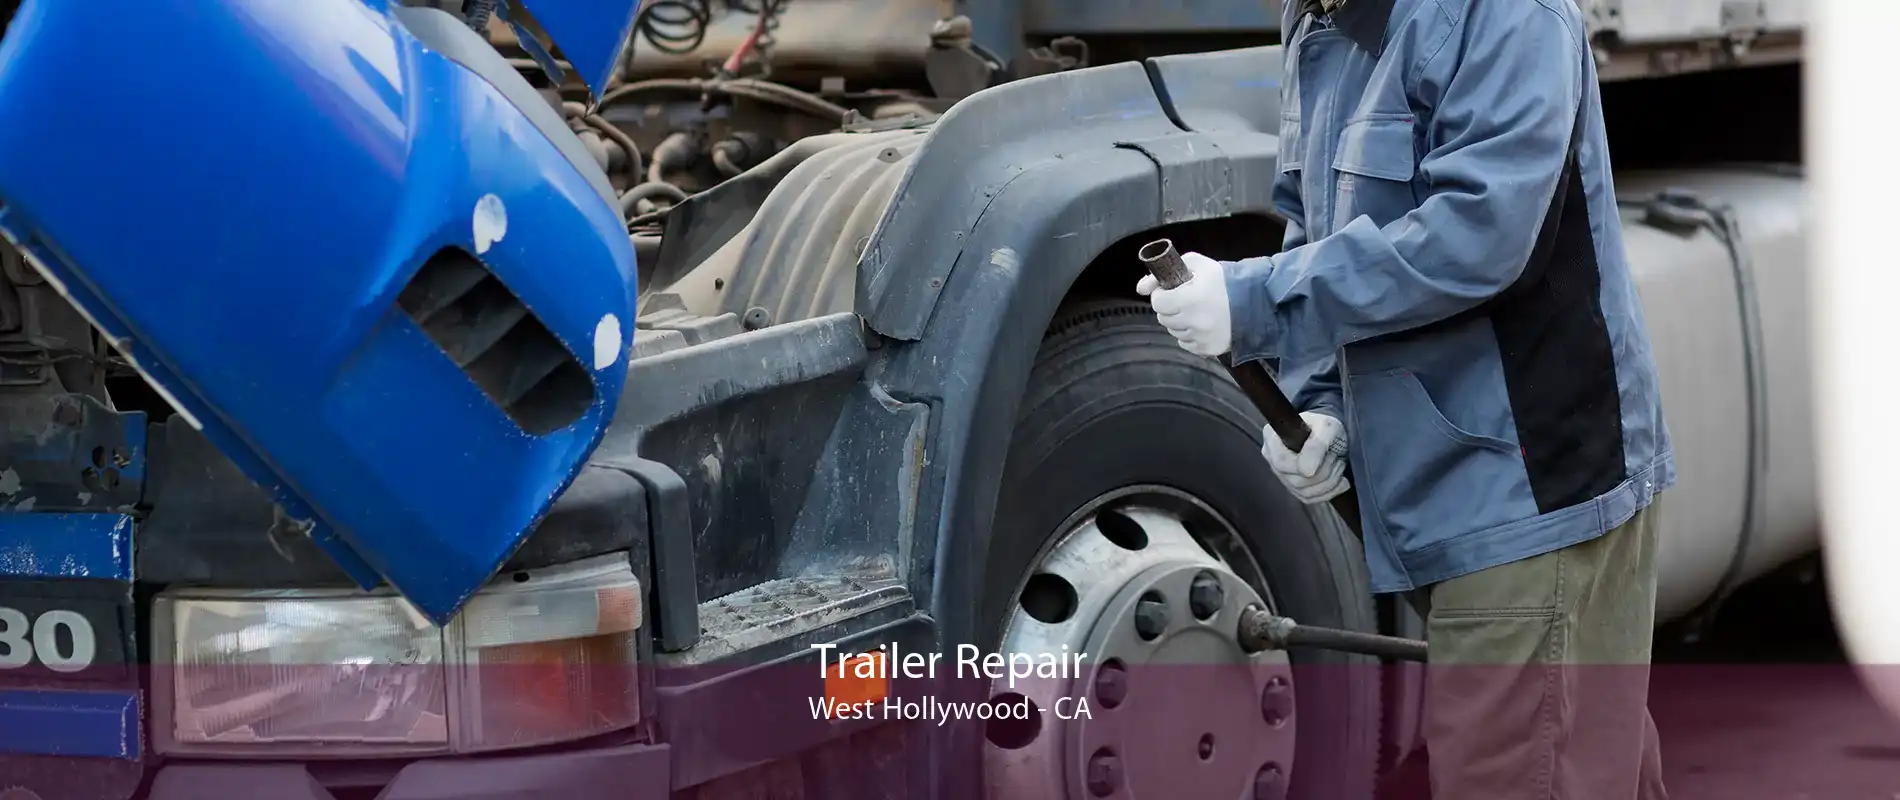 Trailer Repair West Hollywood - CA